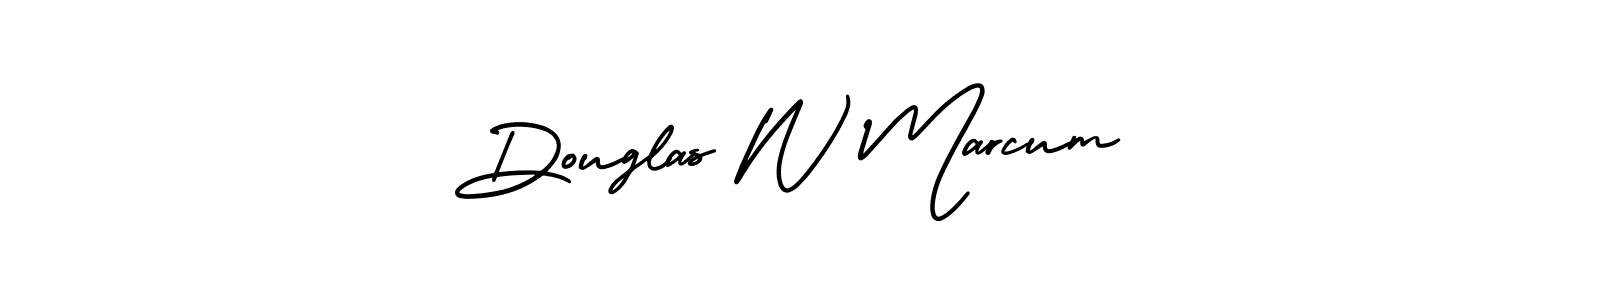 How to Draw Douglas W Marcum signature style? AmerikaSignatureDemo-Regular is a latest design signature styles for name Douglas W Marcum. Douglas W Marcum signature style 3 images and pictures png